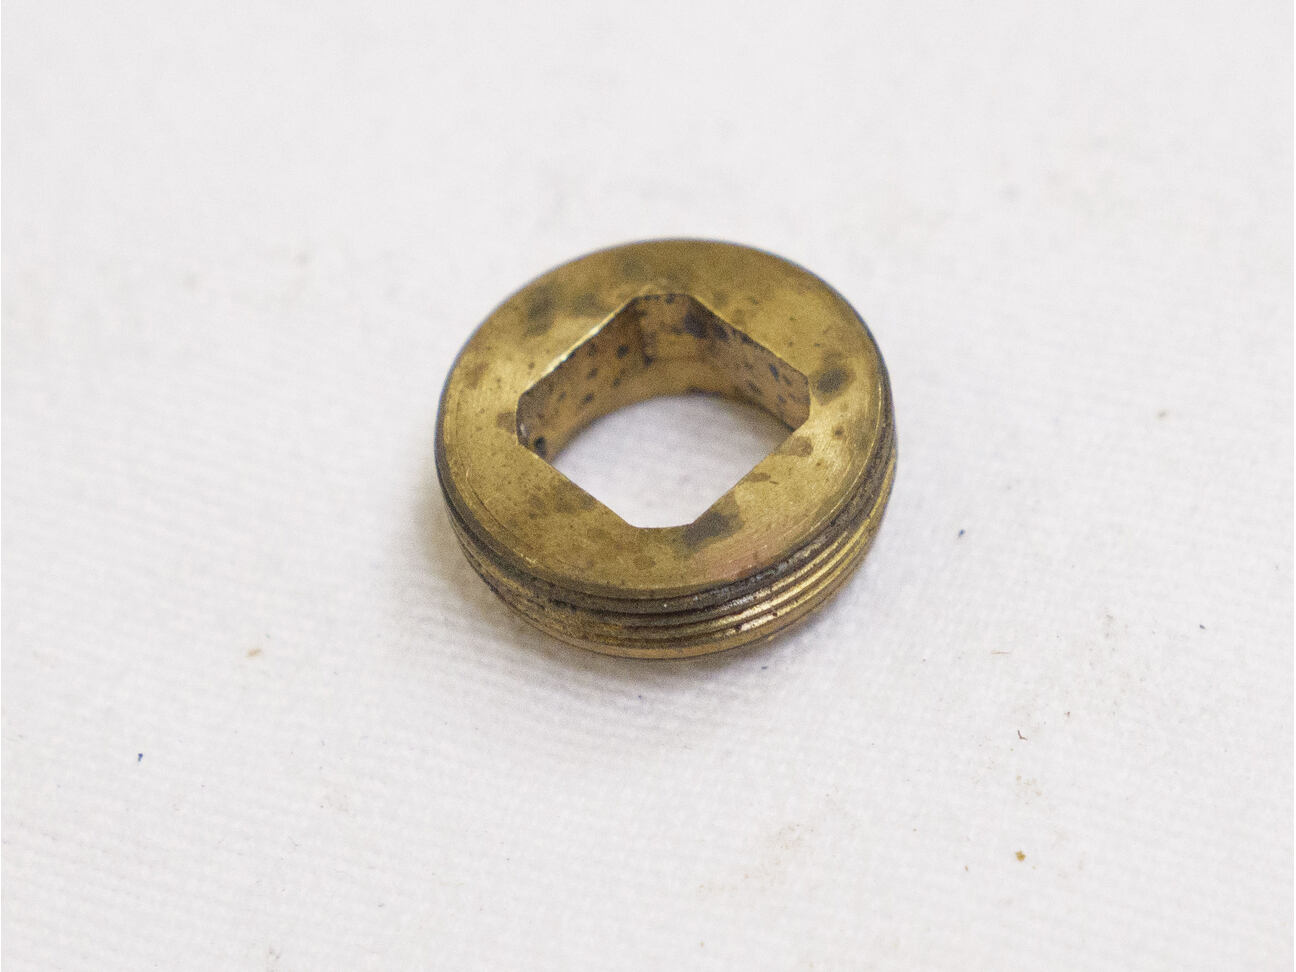 Used good shape sheridan valve retaining screw (brass)